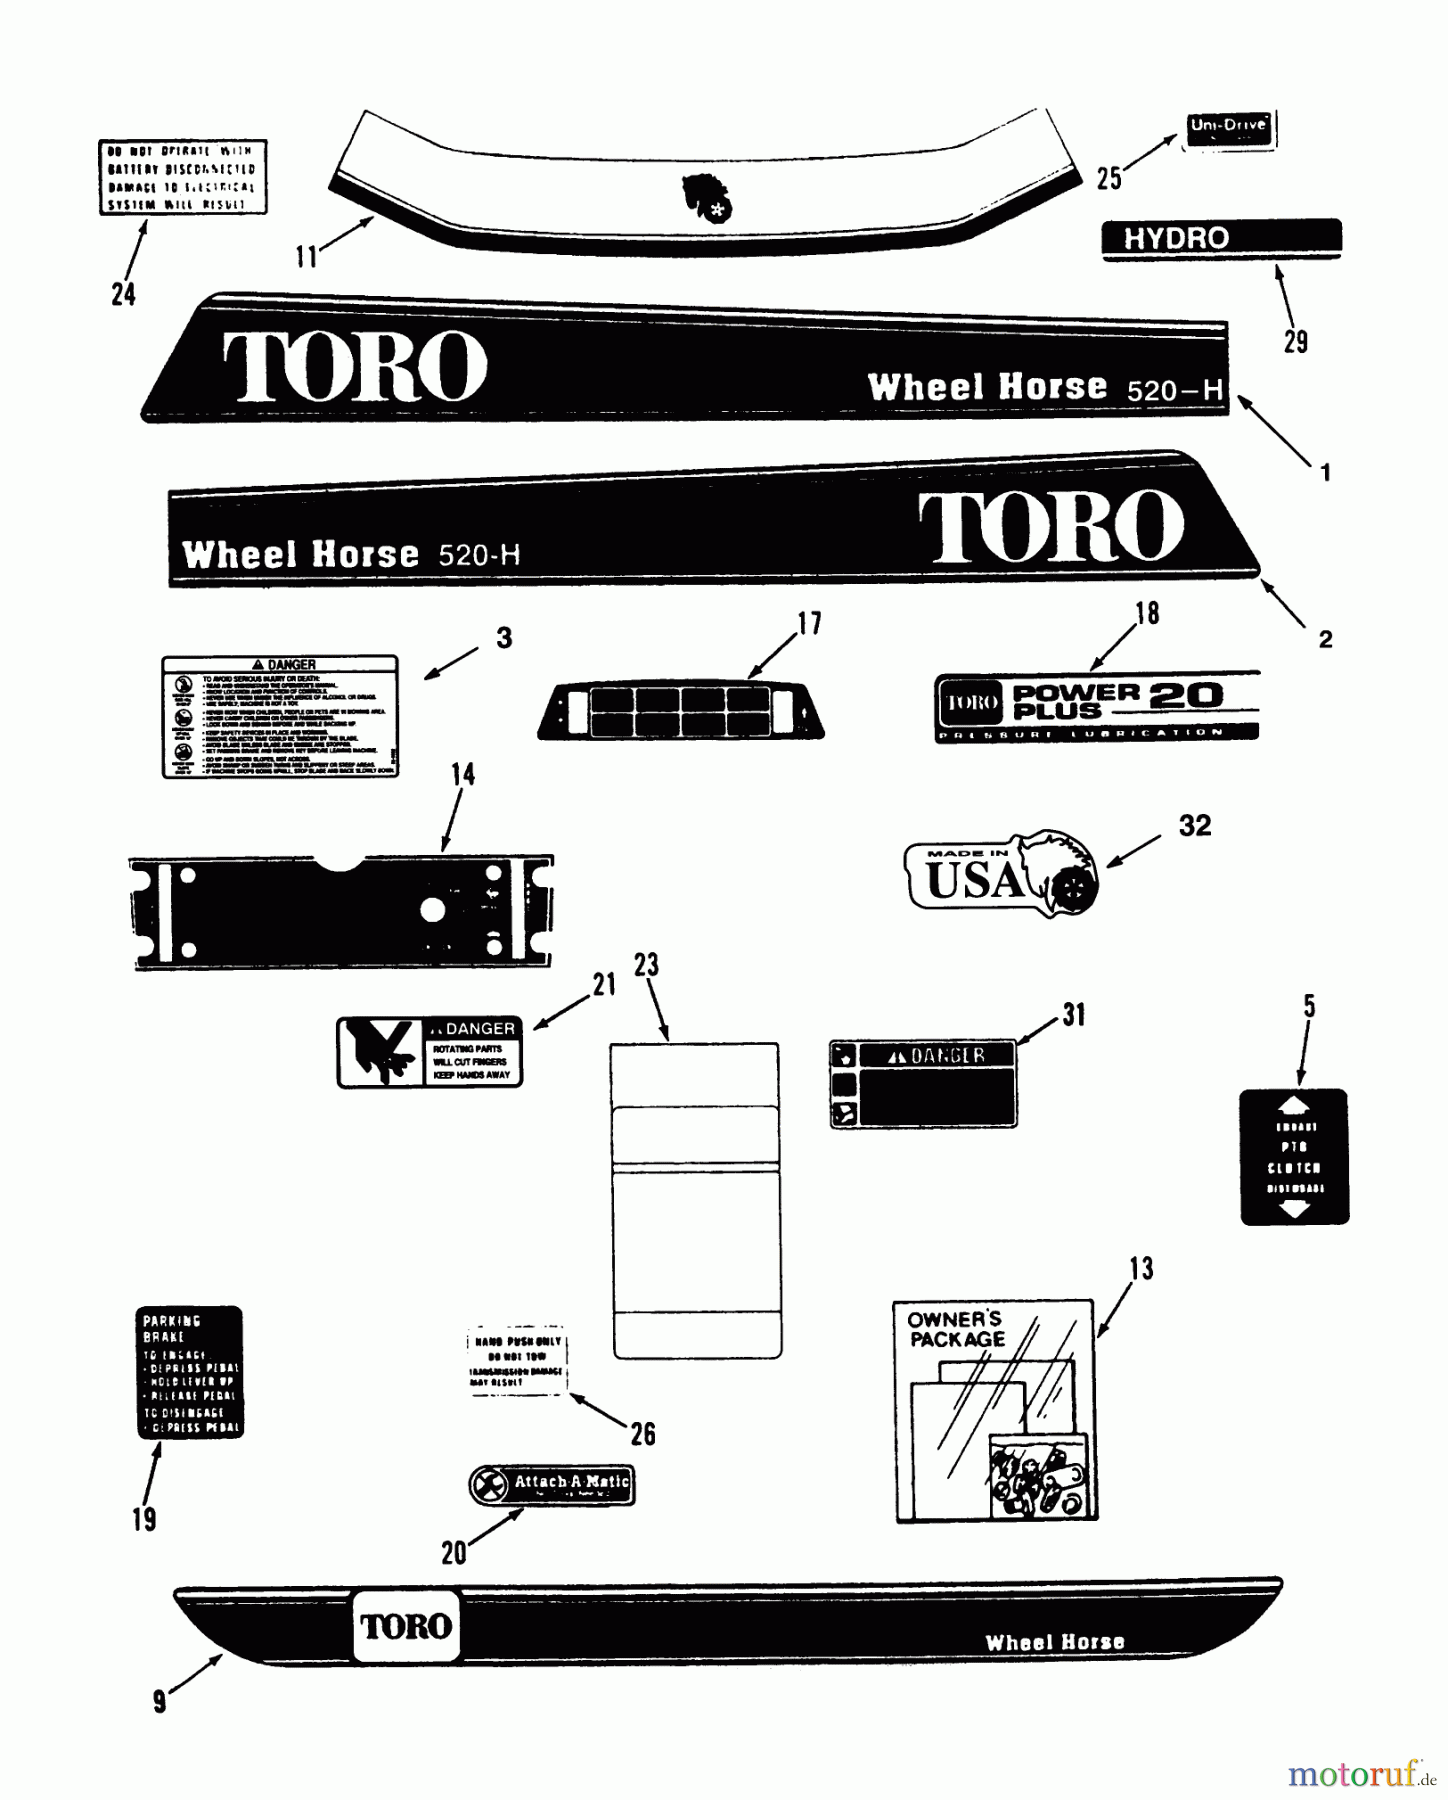  Toro Neu Mowers, Lawn & Garden Tractor Seite 1 73501 (520-H) - Toro 520-H Garden Tractor, 1993 (39000001-39999999) DECALS